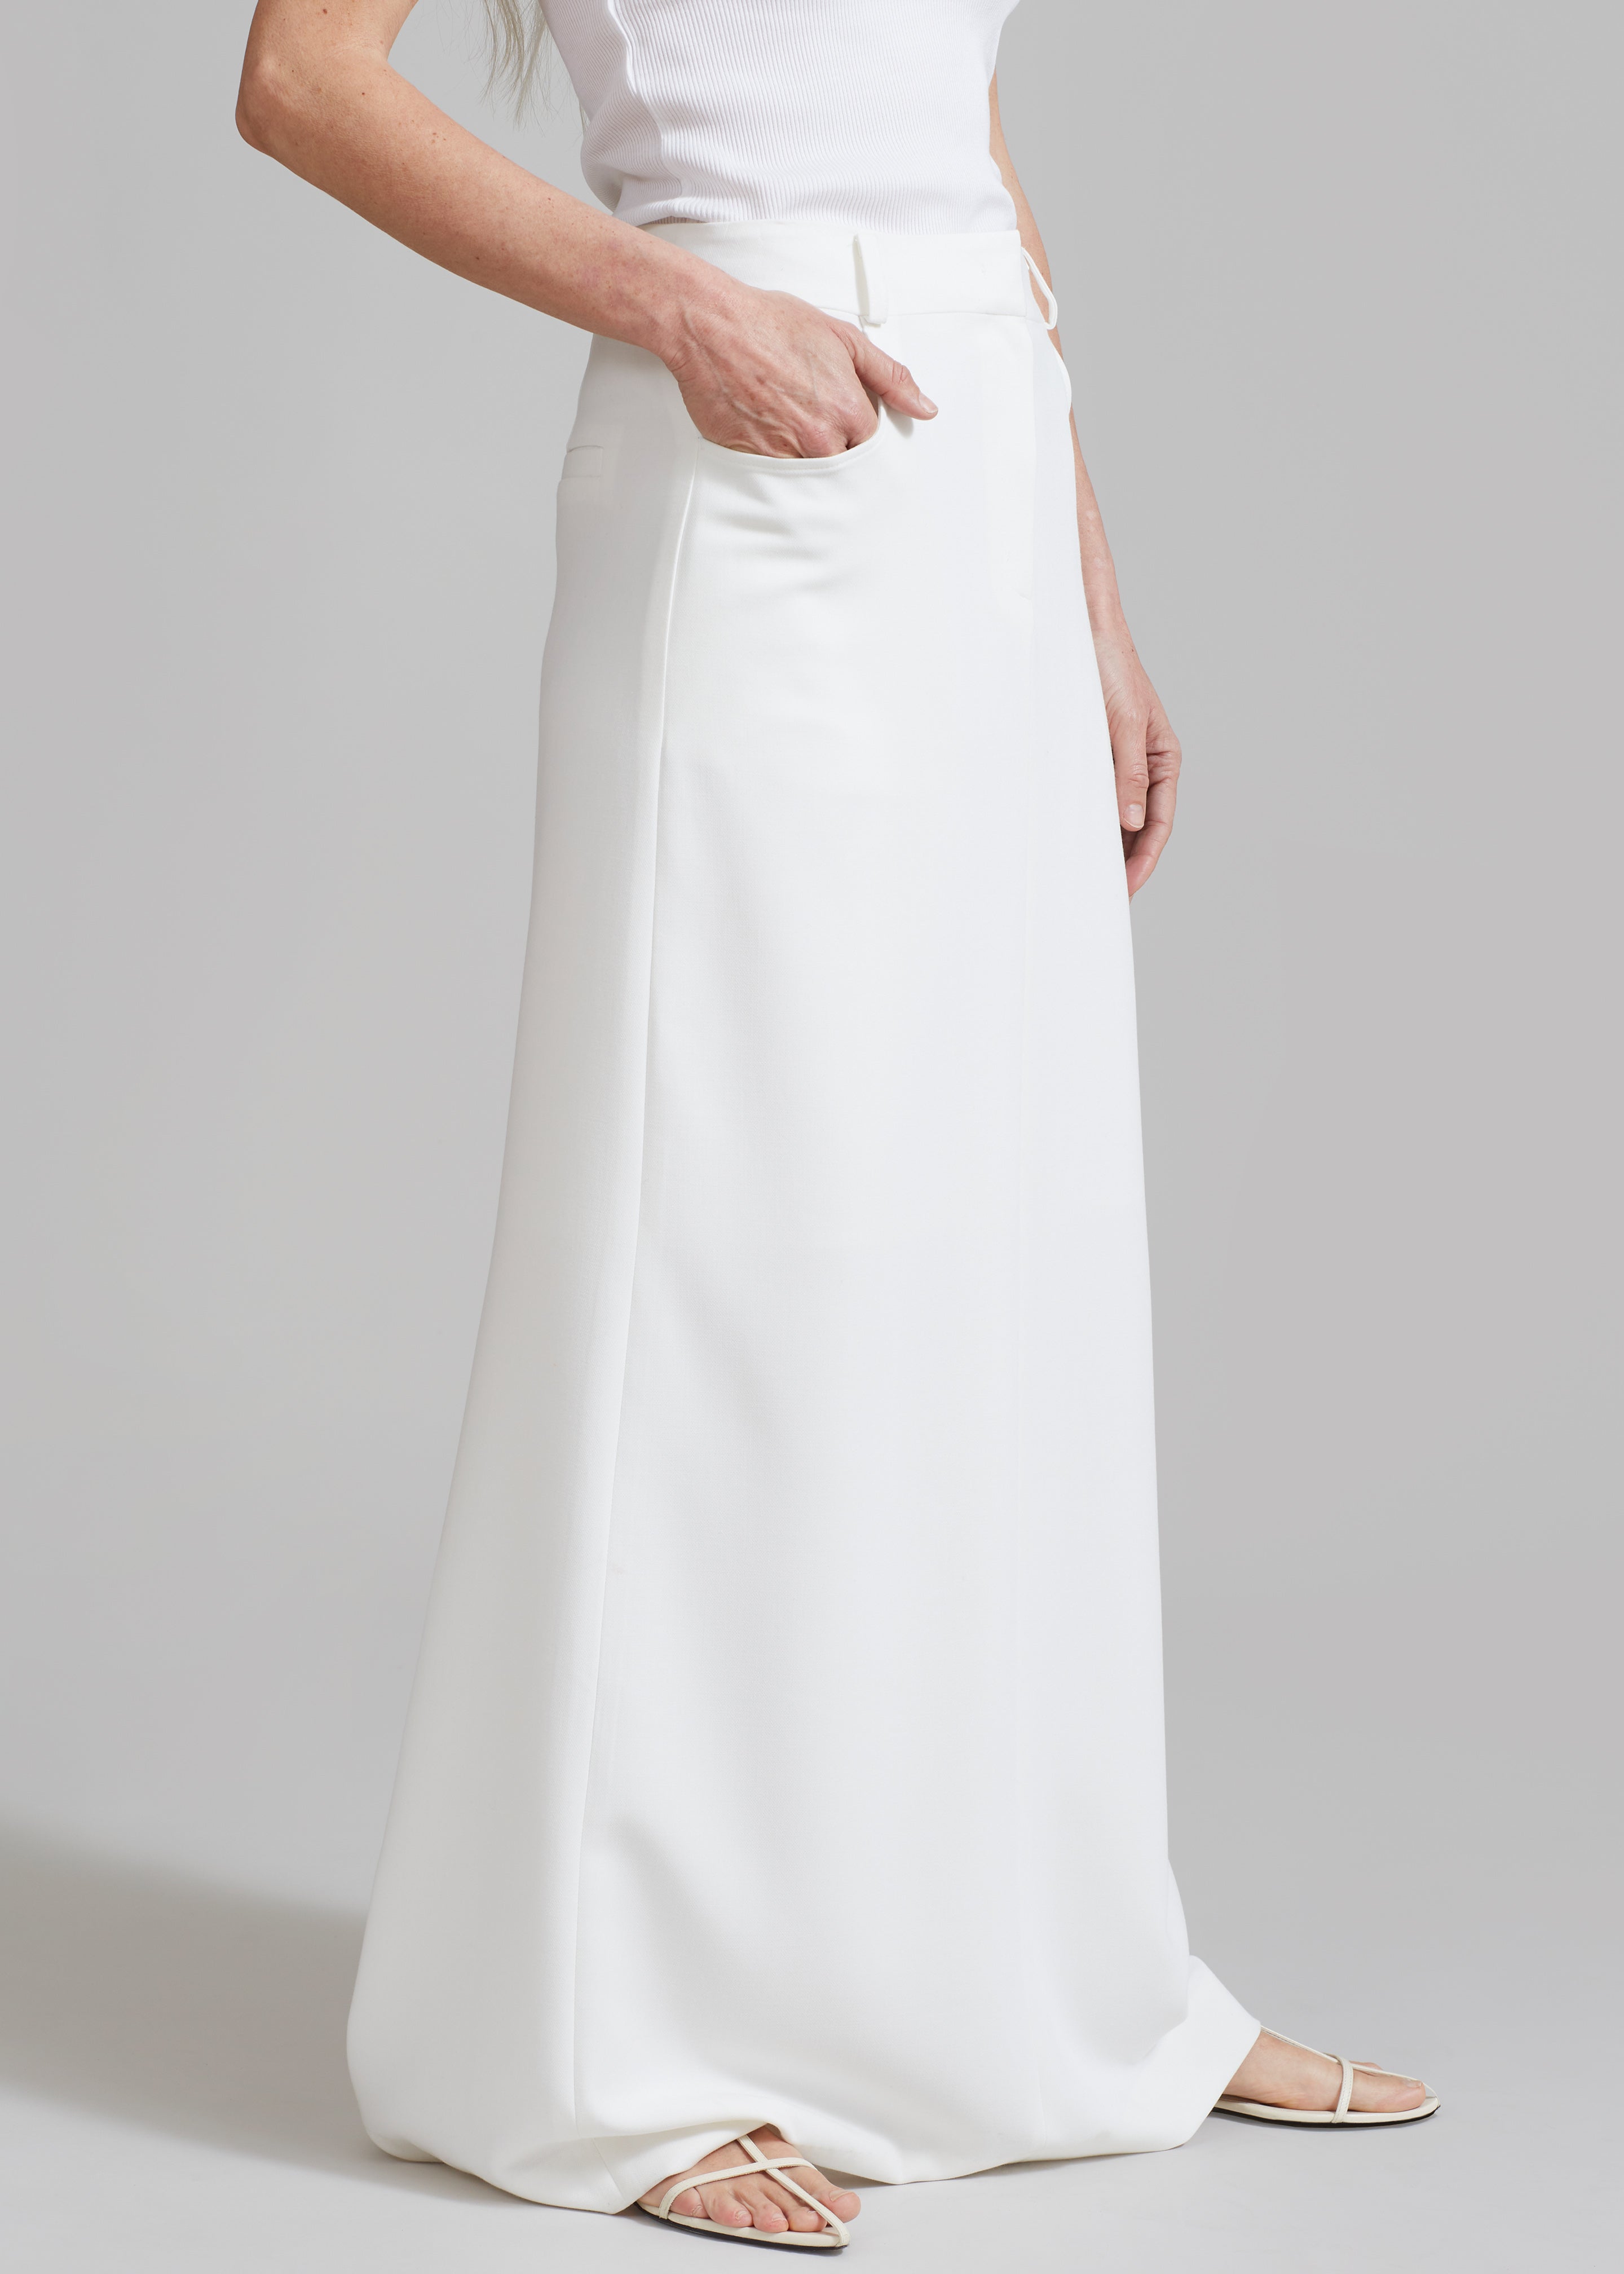 Malvo Long Pencil Skirt - White - 2